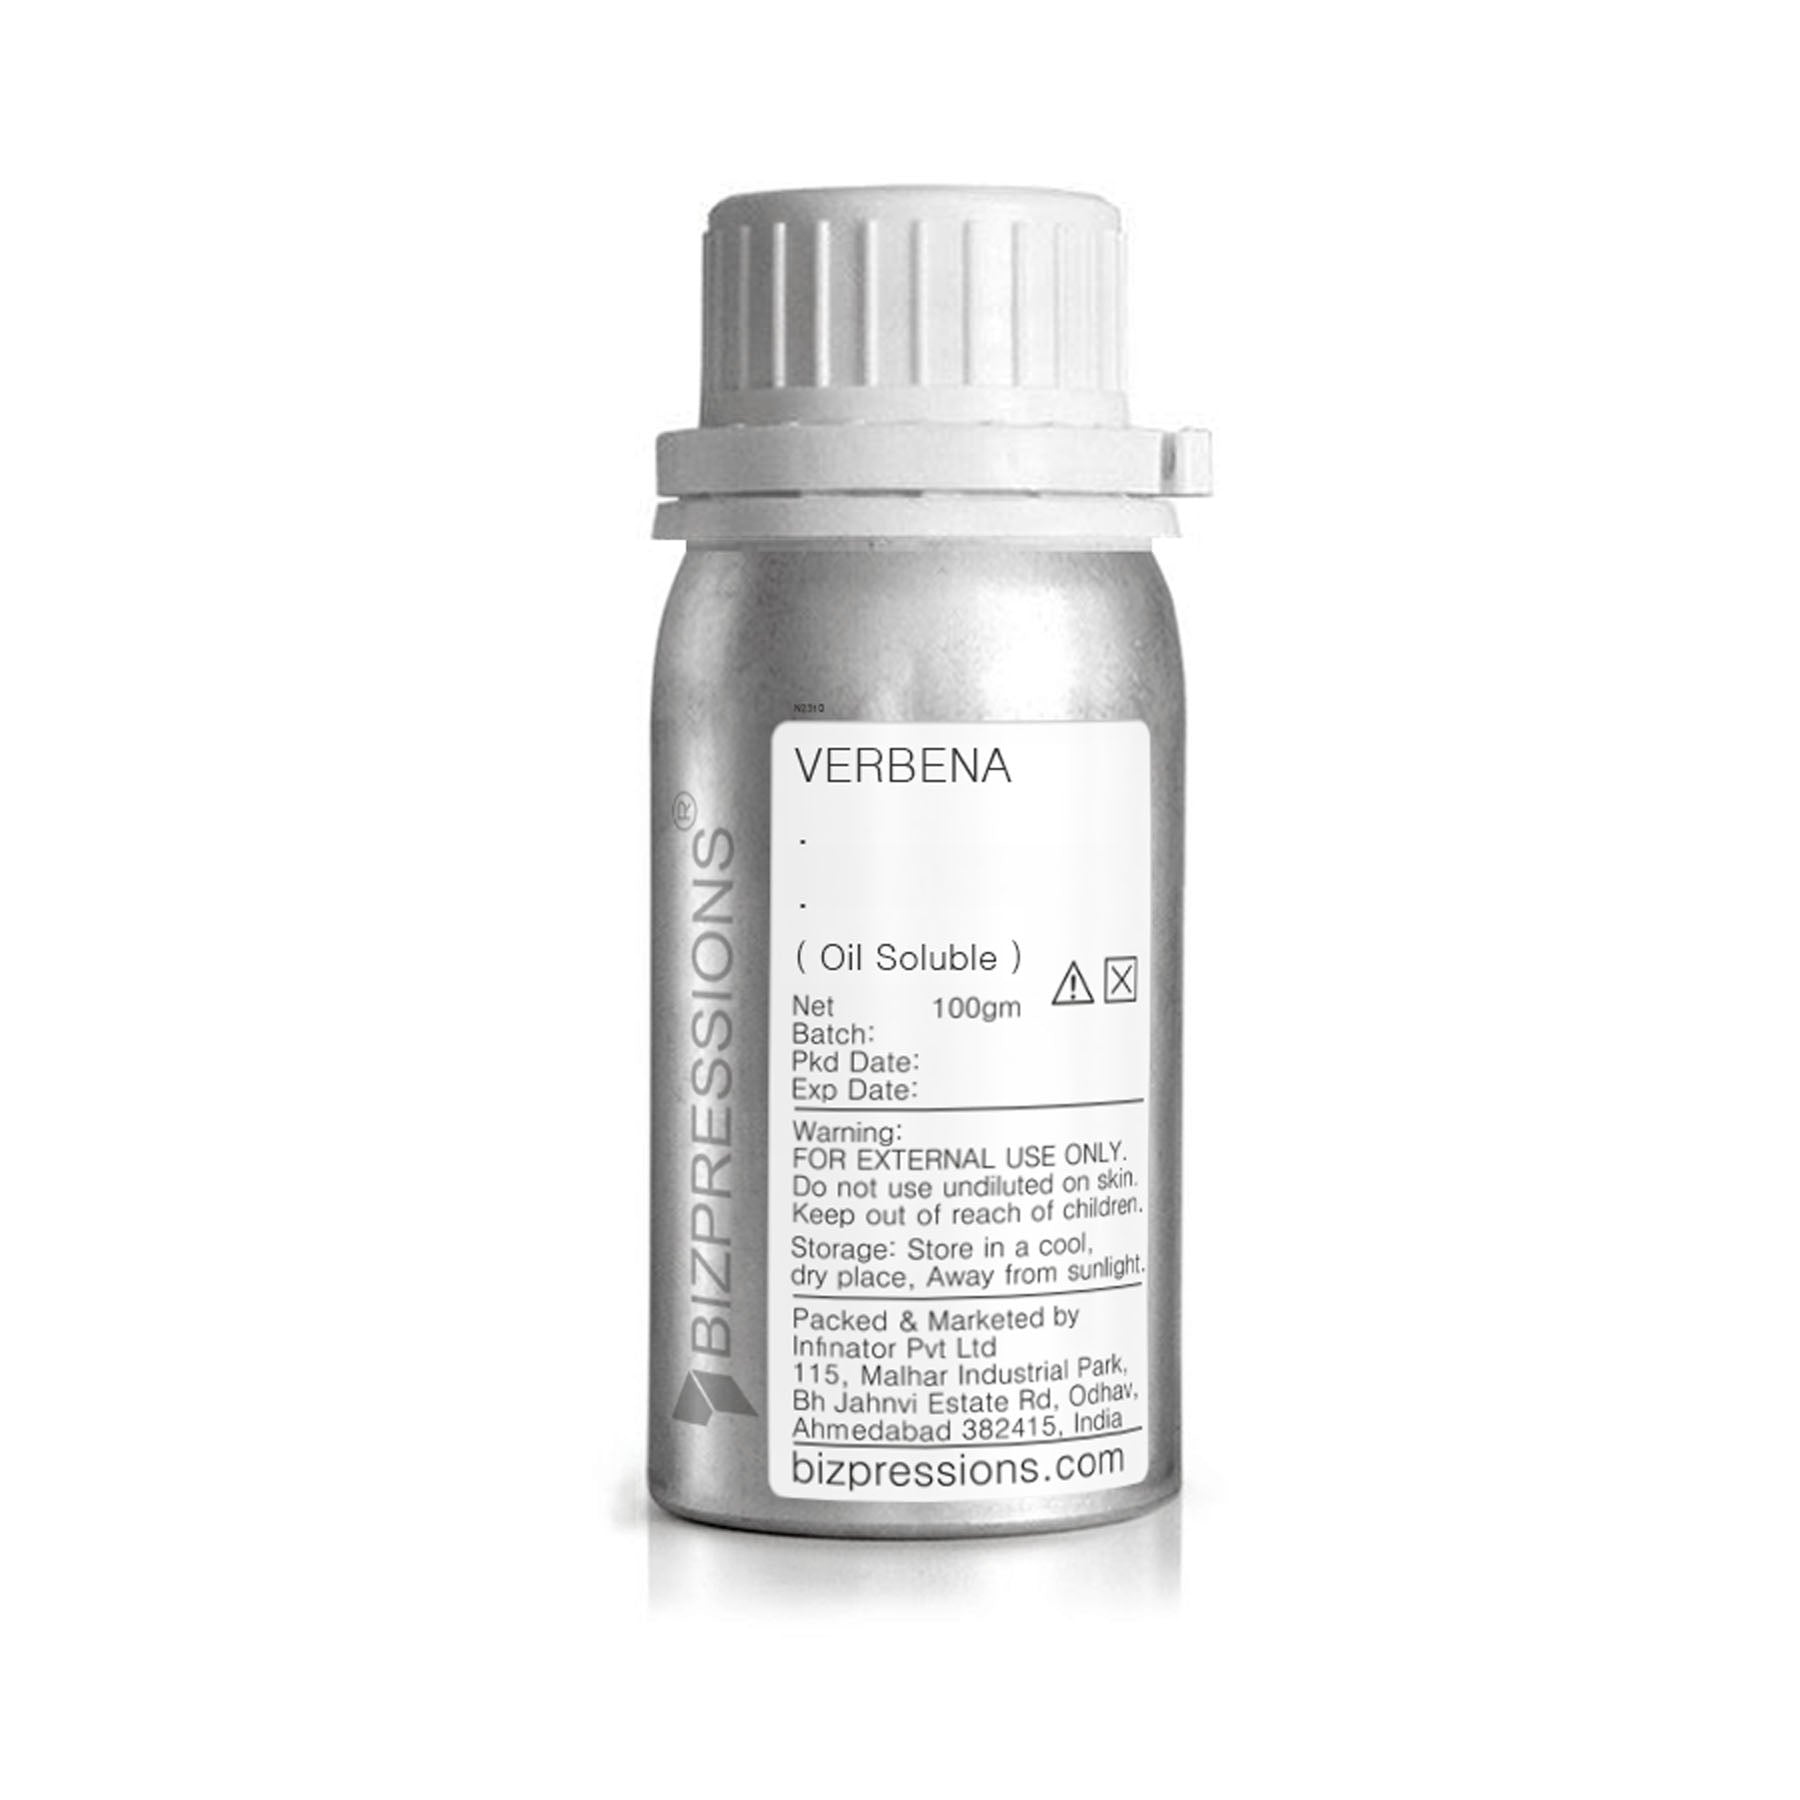 VERBENA - Fragrance ( Oil Soluble ) - 100 gm